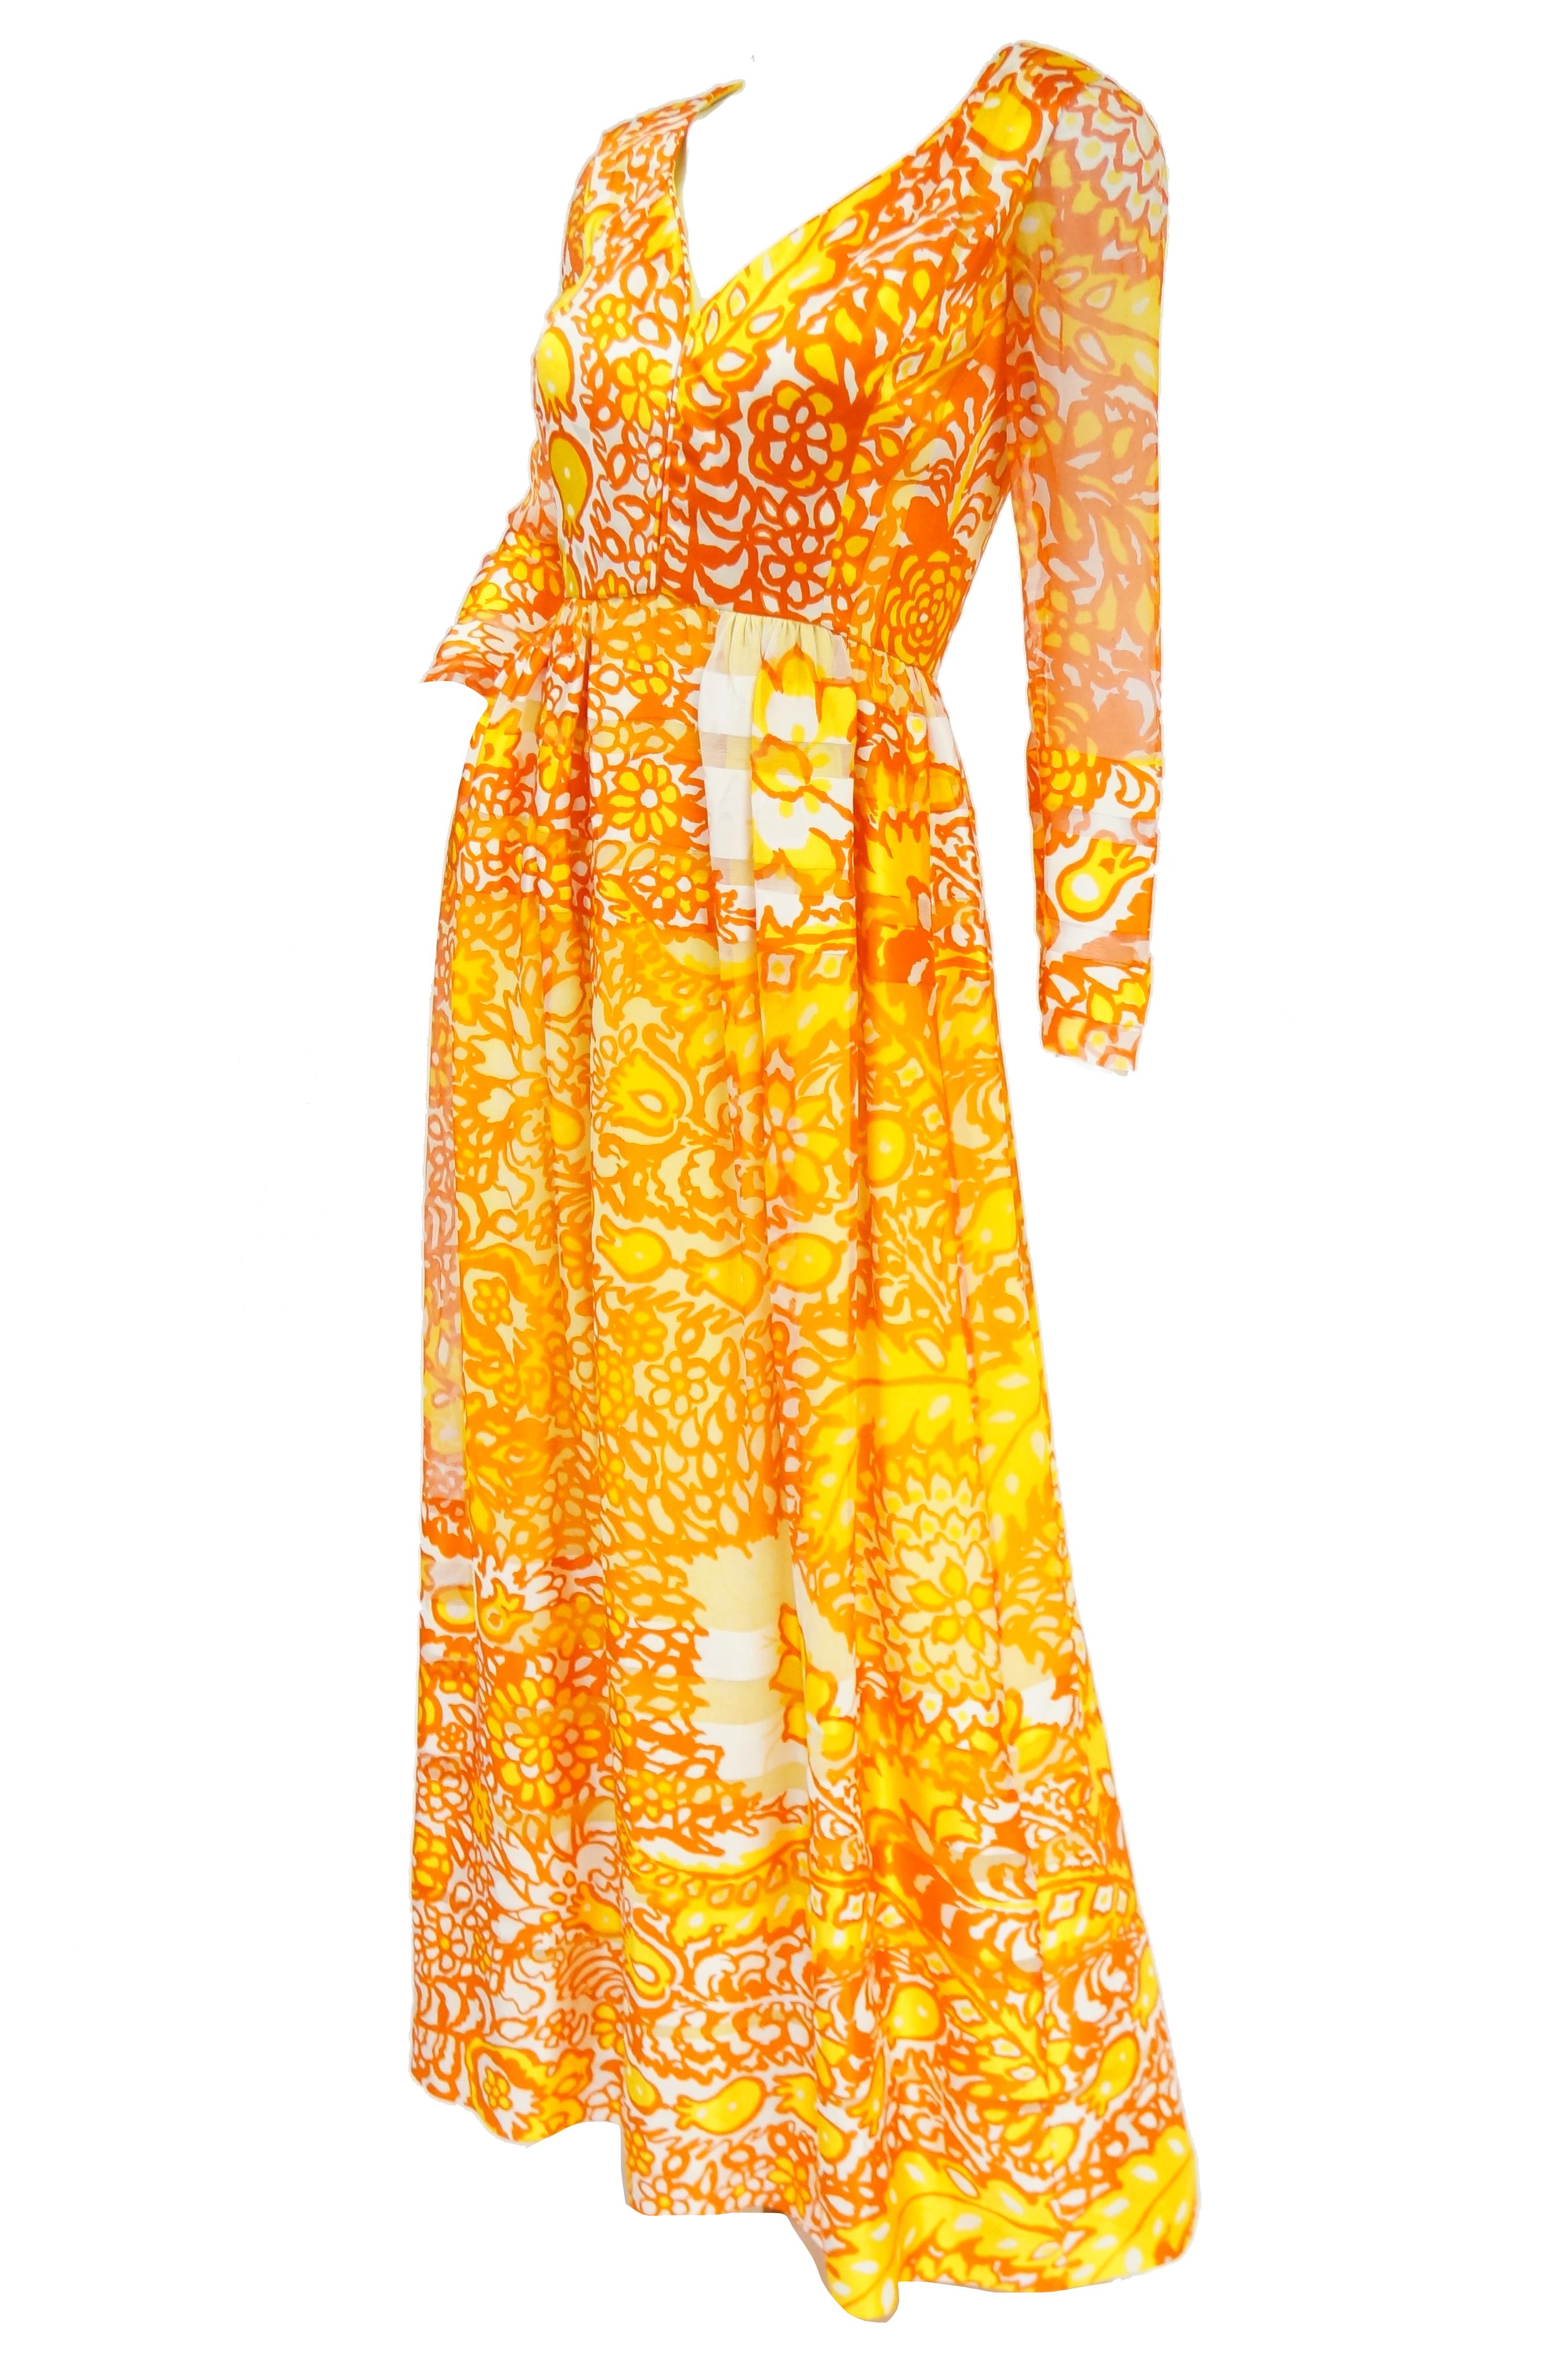 dior orange dress